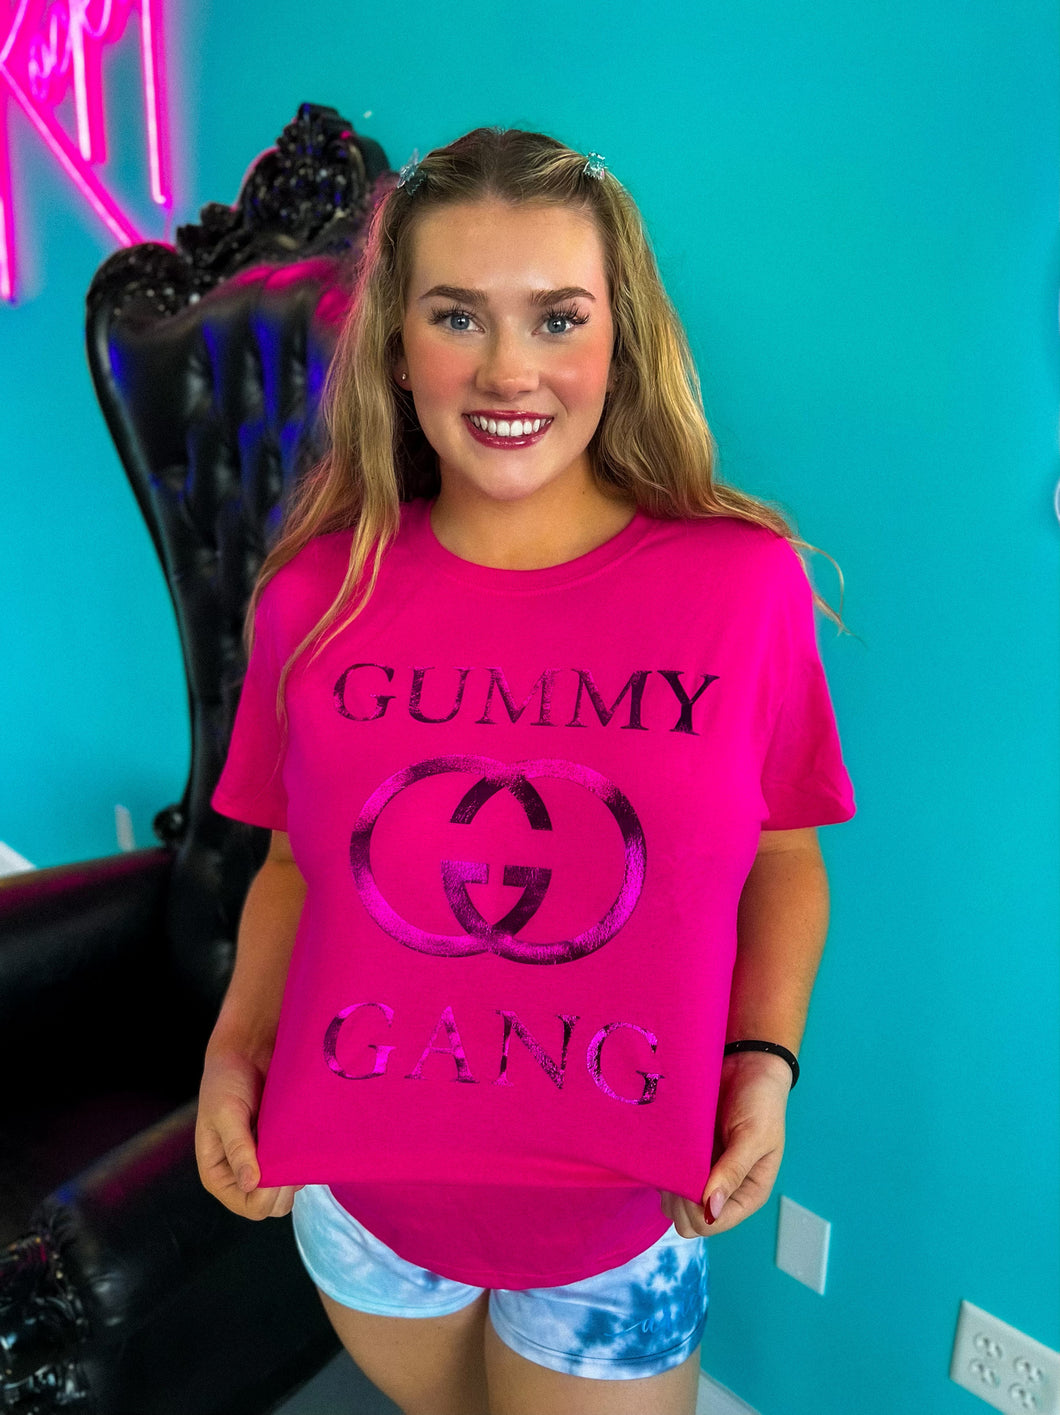 Gummy Gang Hot Pink Tee Shirt